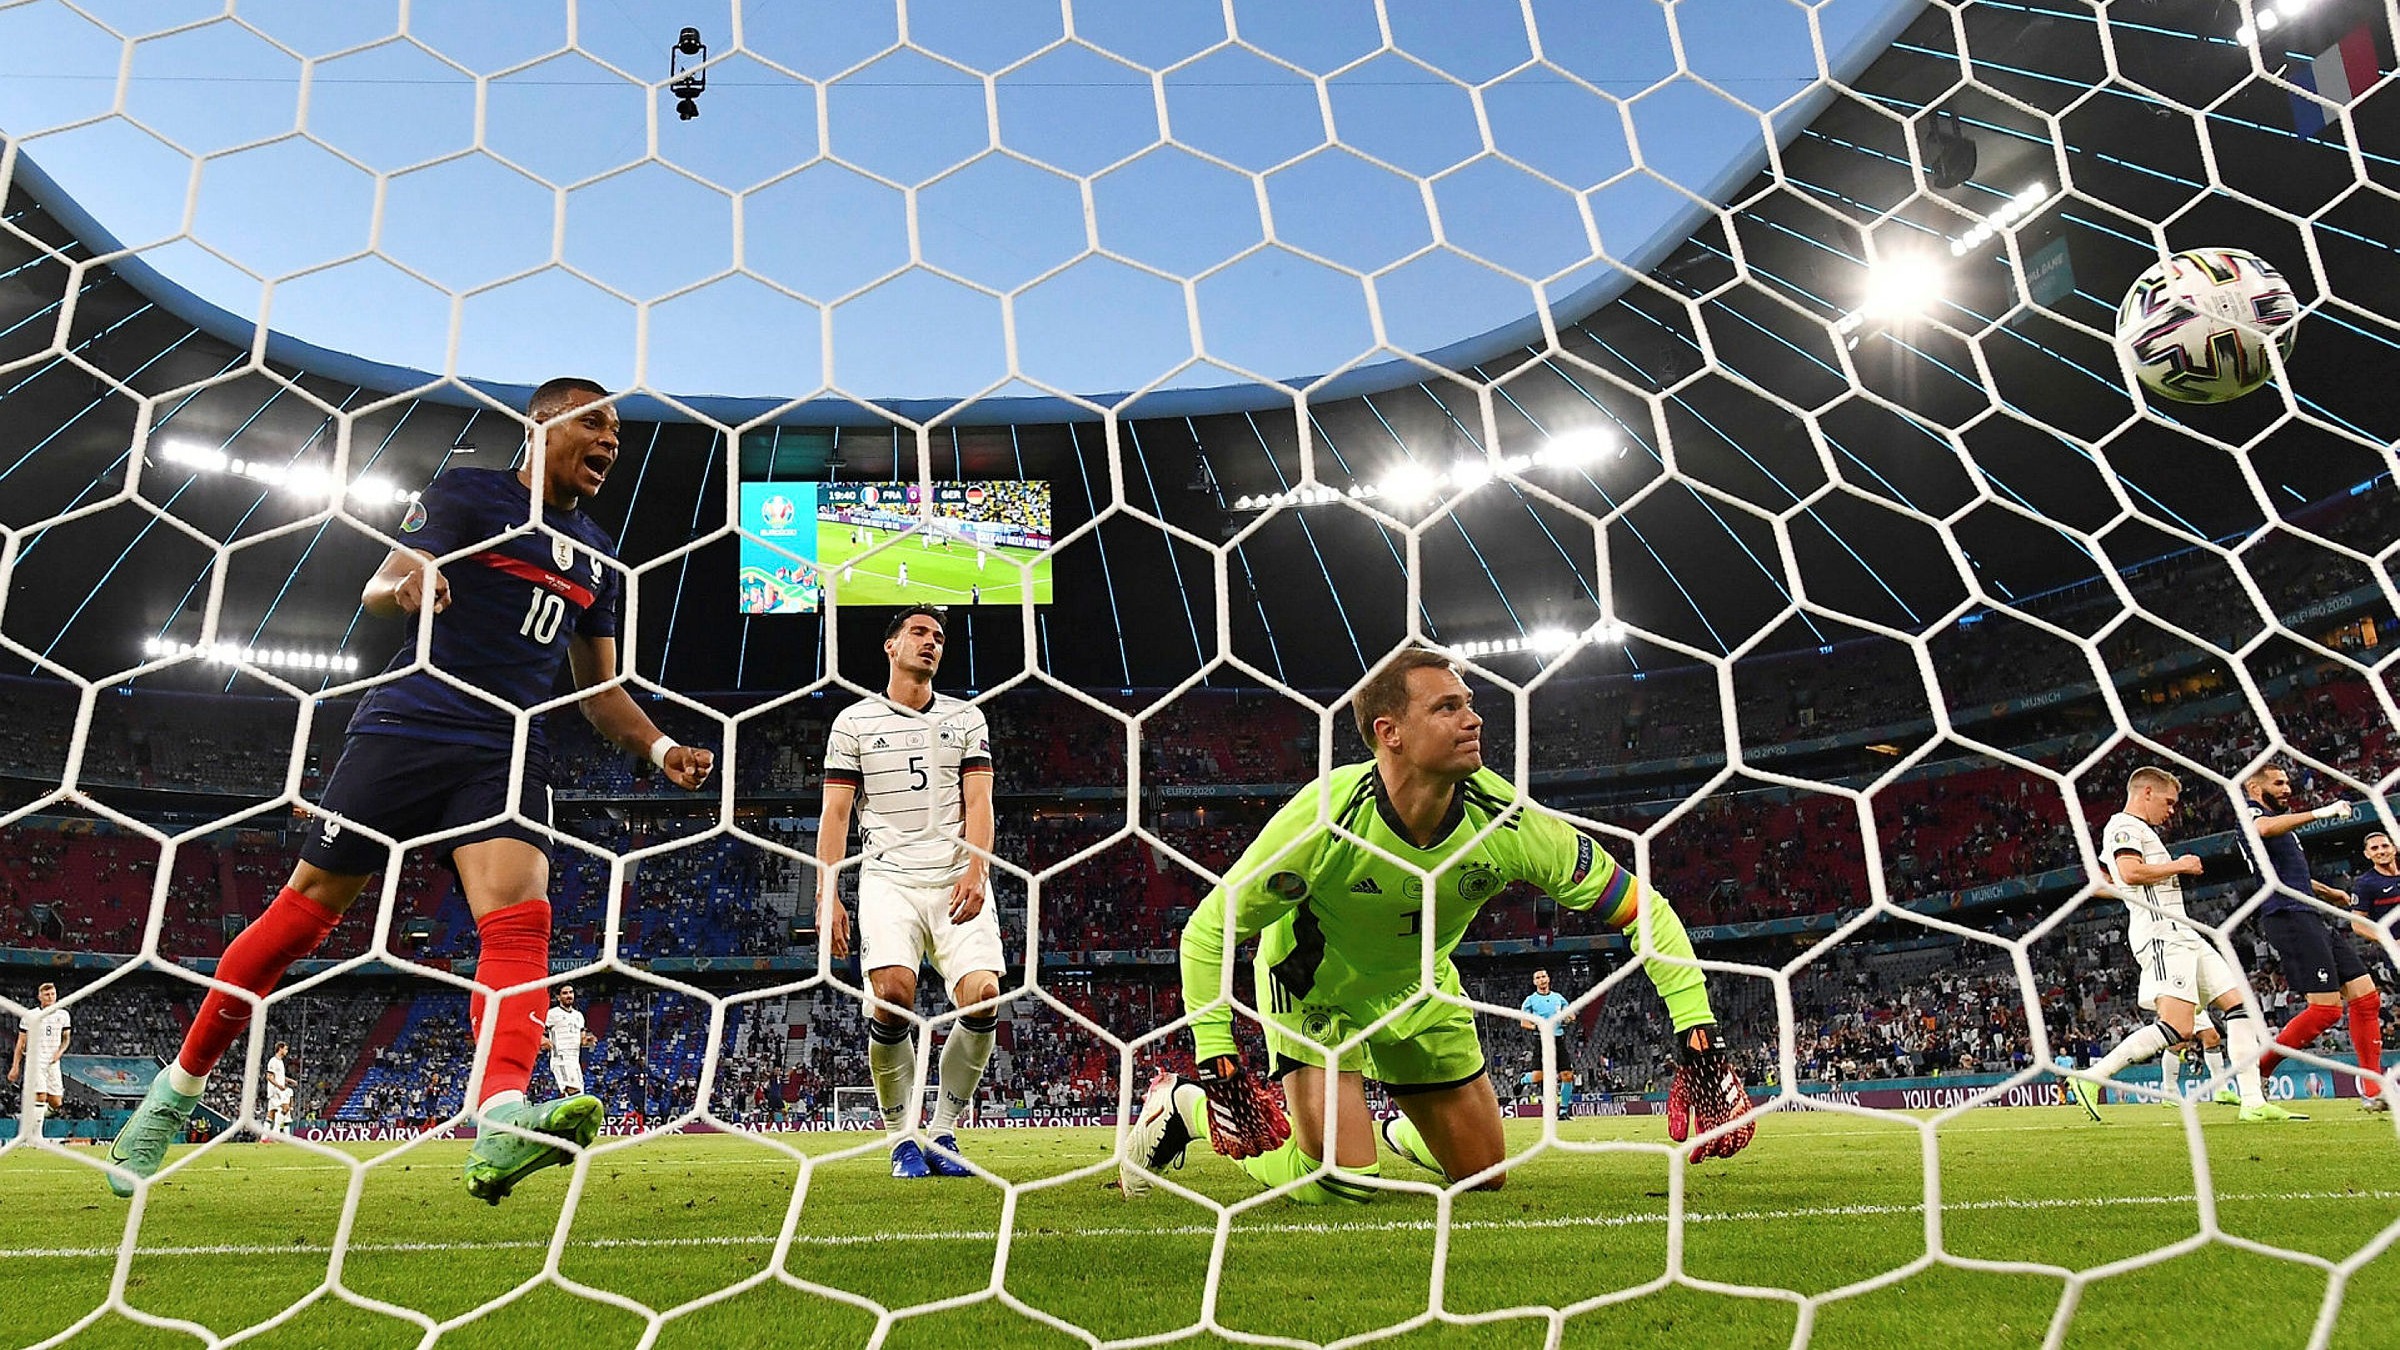 Pháp chiếu dấu với chiến thắng mở màn: Hãy cùng xem những khoảnh khắc vô cùng kịch tính và đầy cảm xúc trong trận đấu đầu tiên của đội tuyển Pháp tại giải bóng đá lớn. Chiến thắng nghẹt thở của đội tuyển Pháp sẽ khiến bạn không thể rời mắt khỏi màn hình và cảm nhận được tình yêu và niềm đam mê bóng đá.